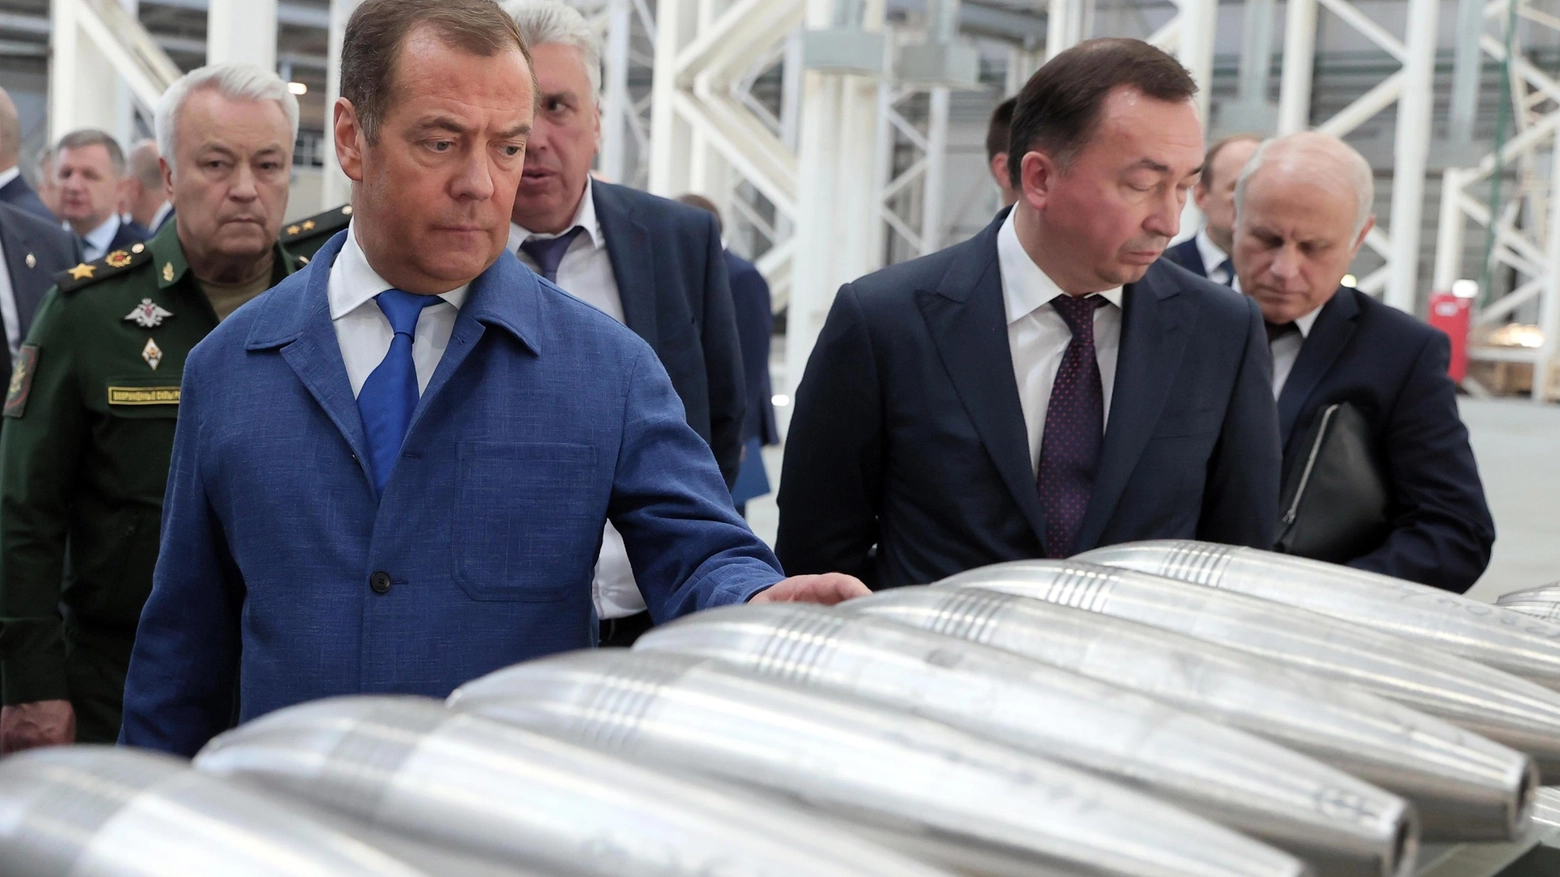 L’ex presidente russo Medvedev: "L’arma atomica non è più un tabù". Zelensky: il nemico potrebbe aver minato la centrale per un attentato.